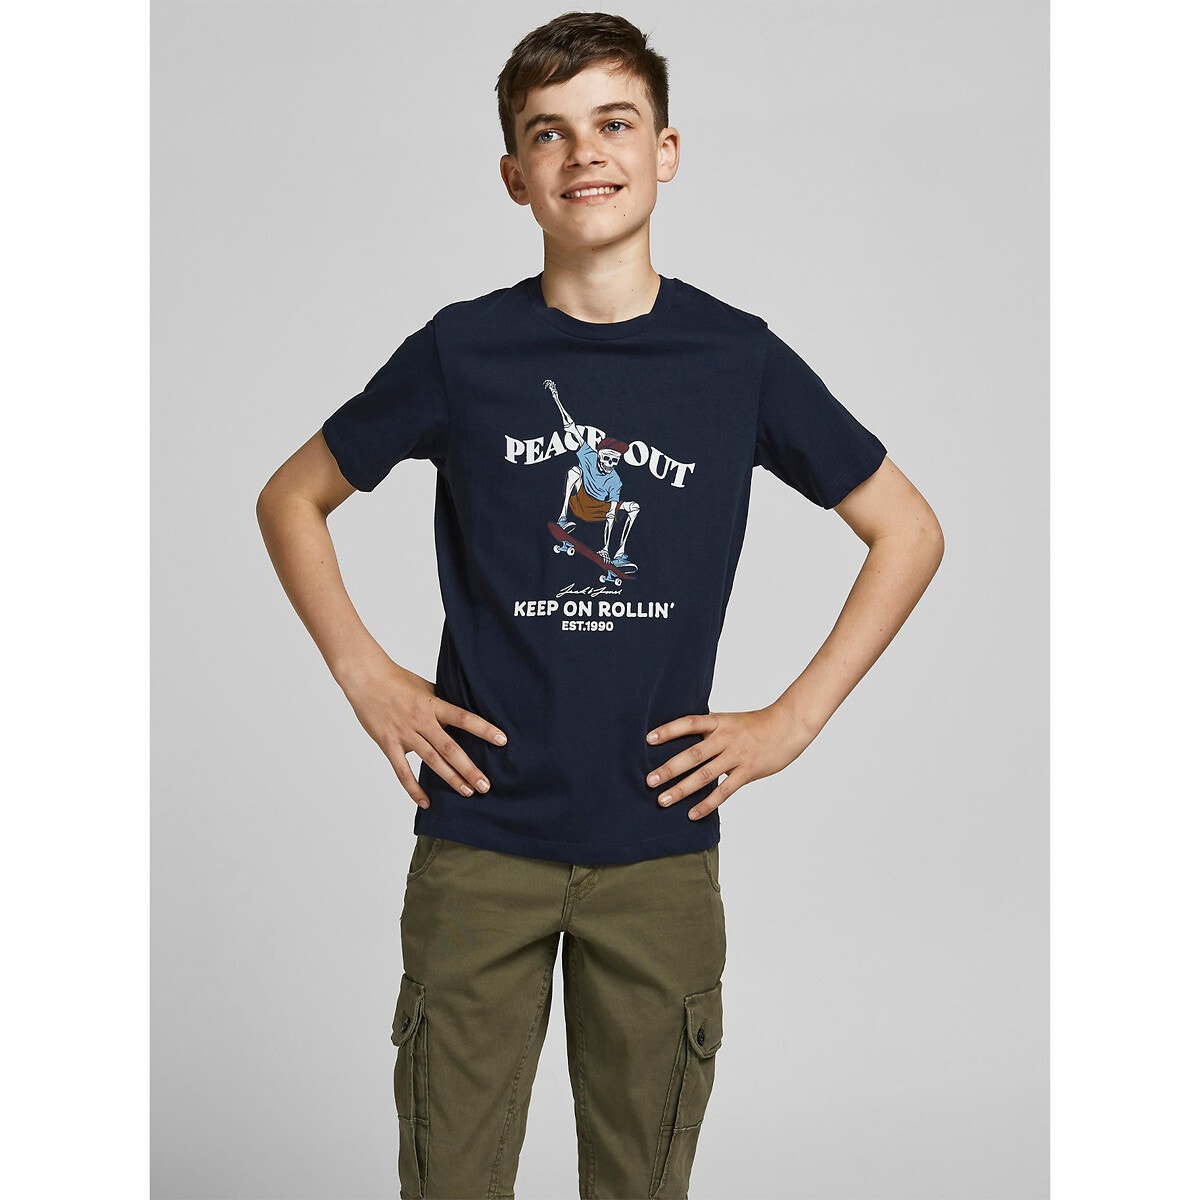 ΠΑΙΔΙ | Μπλούζες & Πουκάμισα | T-shirts Κοντομάνικο T-shirt, 10 - 16 ετών